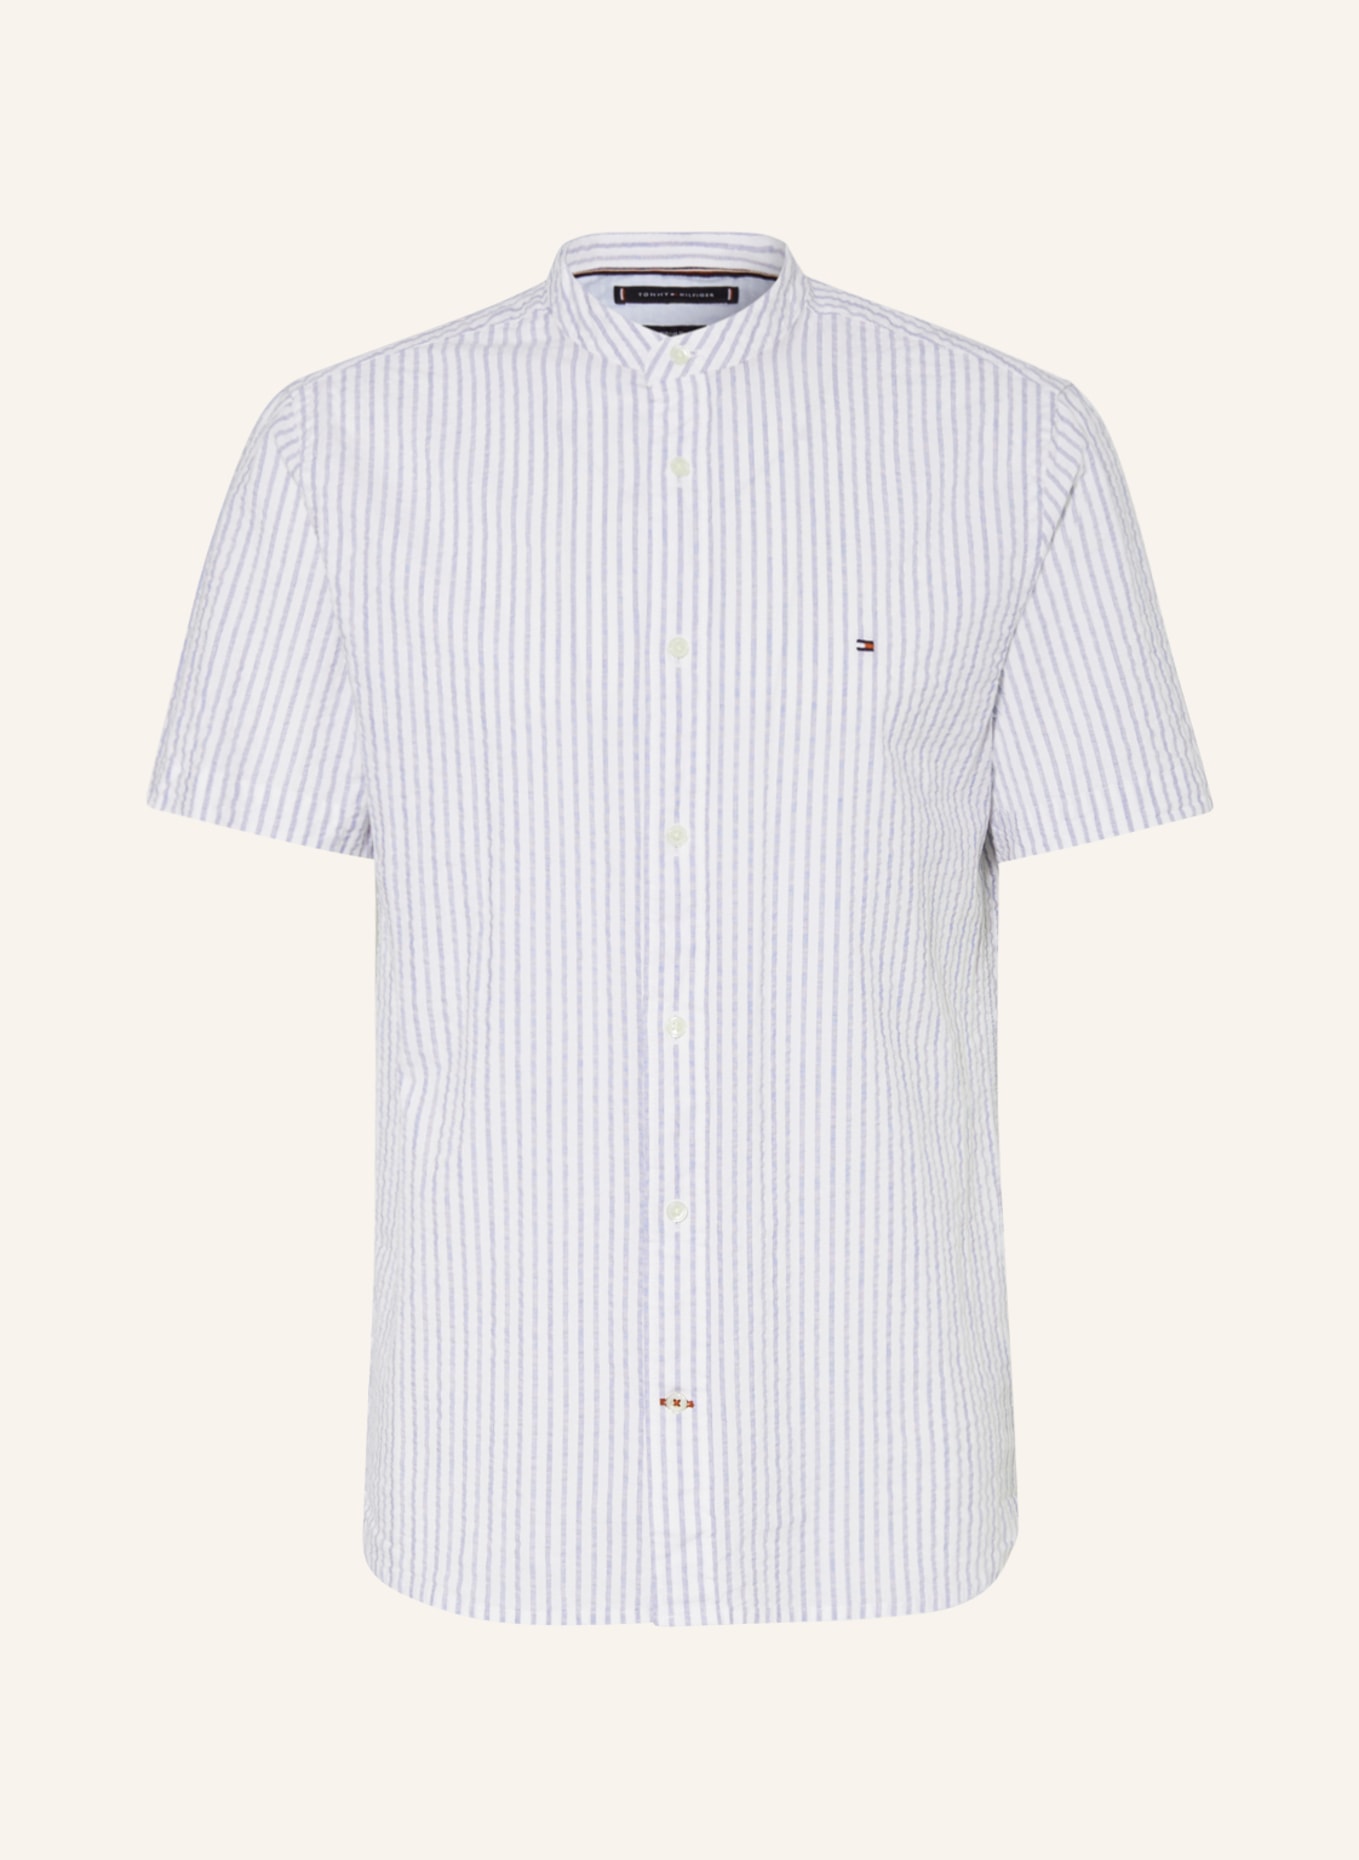 TOMMY HILFIGER Short sleeve shirt regular fit, Color: LIGHT BLUE/ WHITE (Image 1)